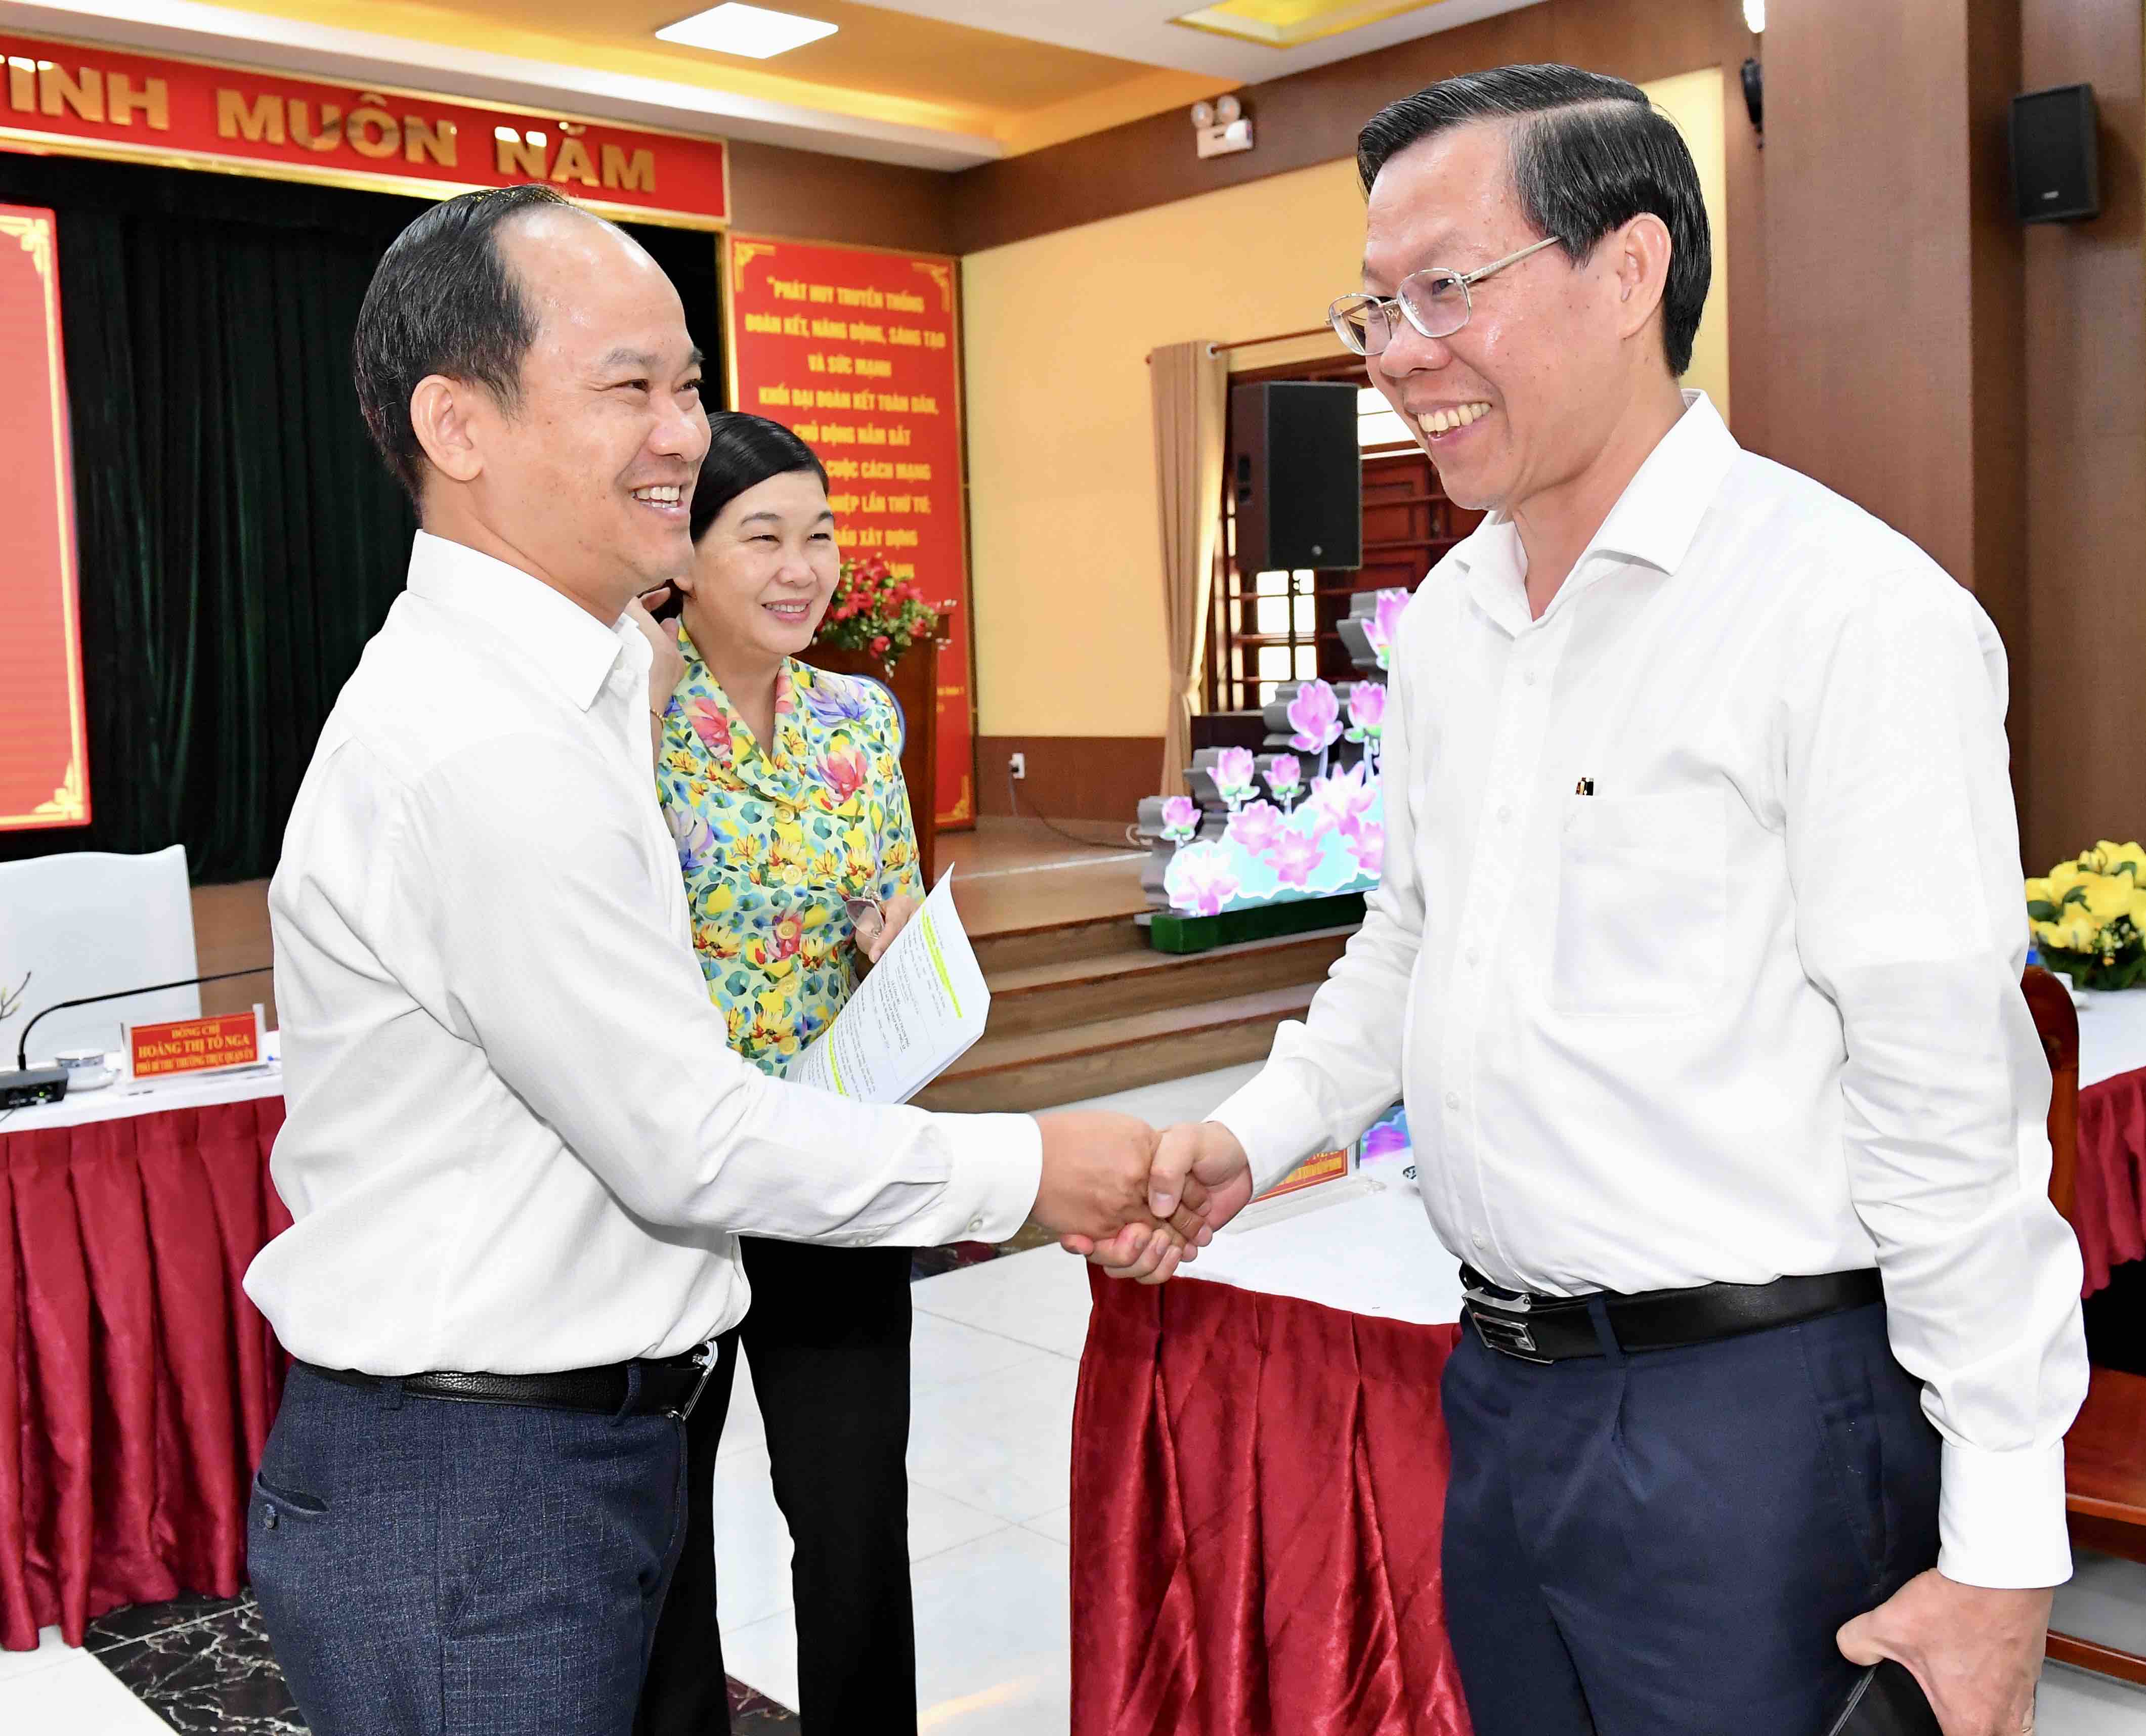 Phó Bí thư Thành ủy, Chủ tịch UBND TP. Hồ Chí Minh Phan Văn Mãi trao đổi cùng đại biểu (Ảnh: Việt Dũng).